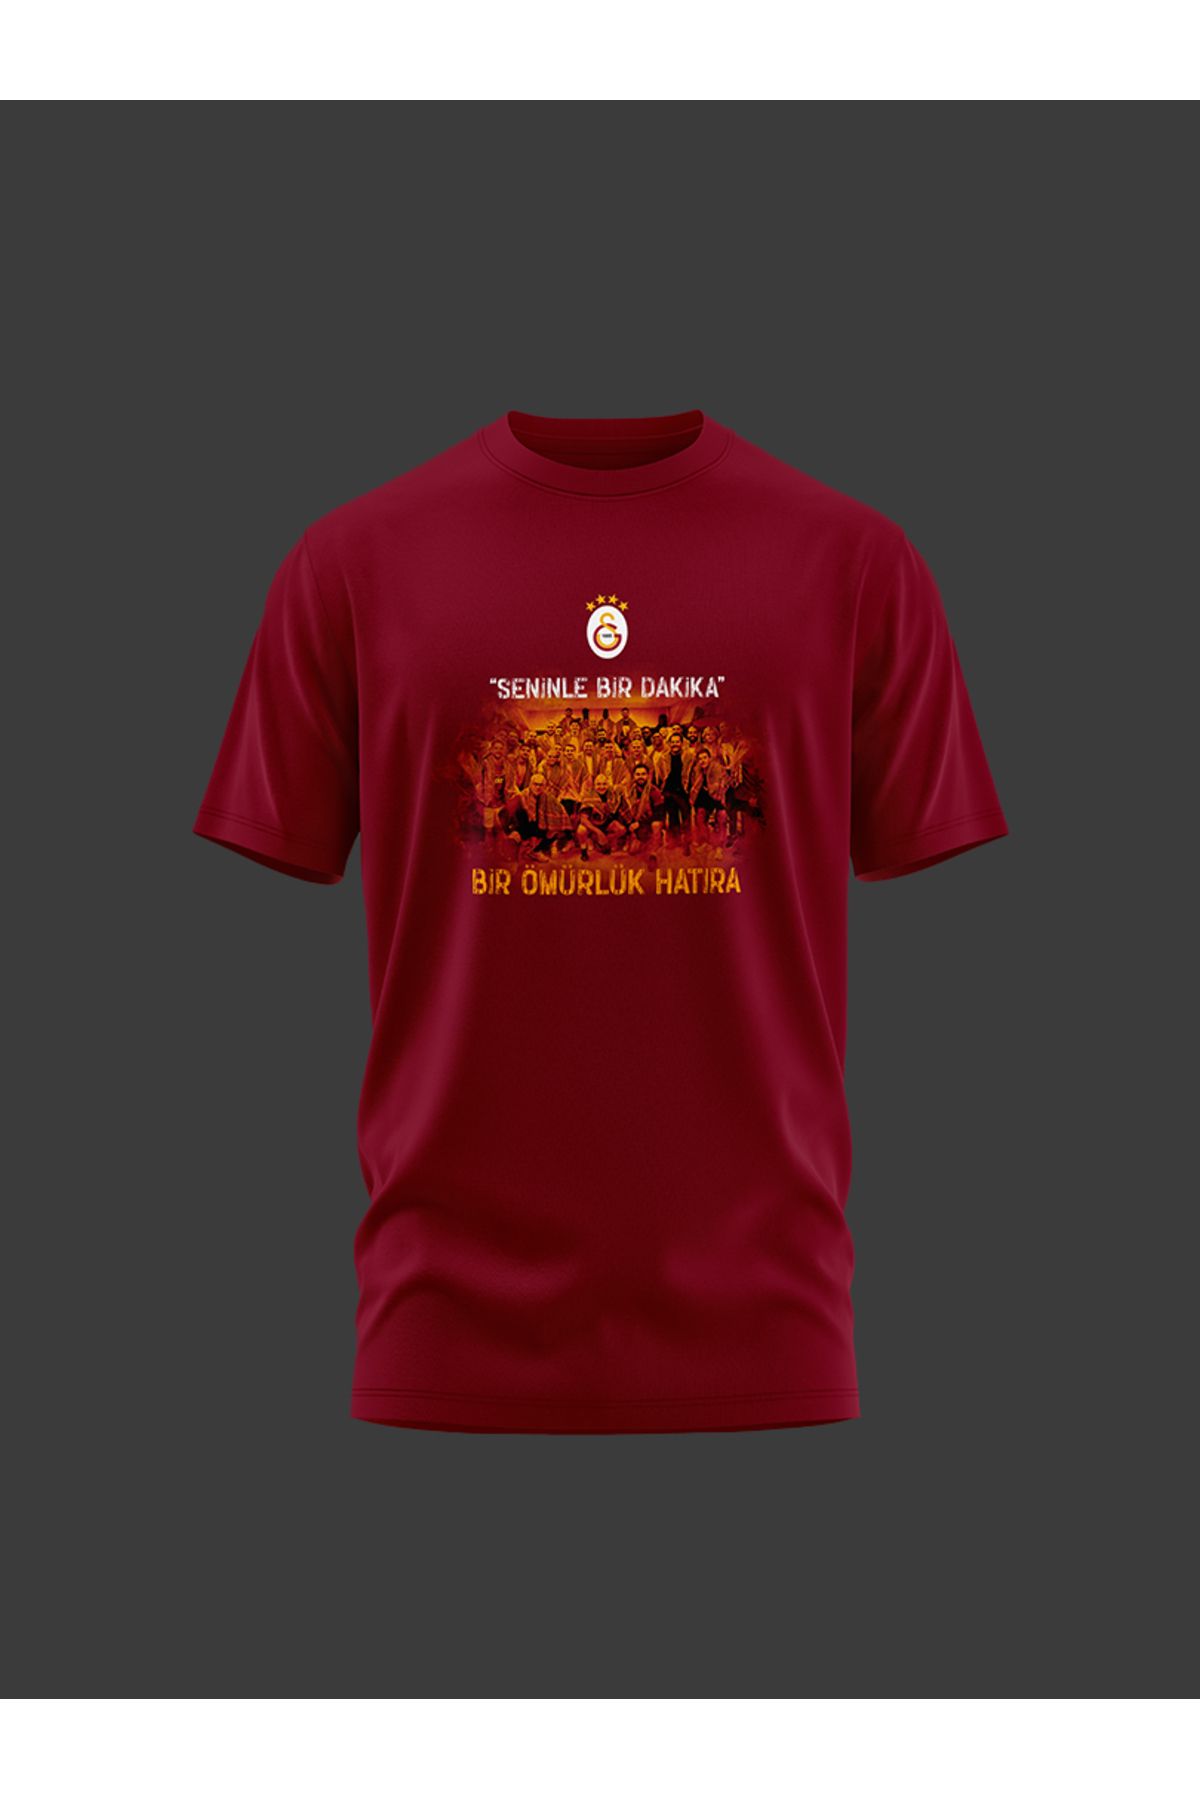 Galatasaray Galatasaray Seninle Bir Dakika Hatıra T-Shirt E241280